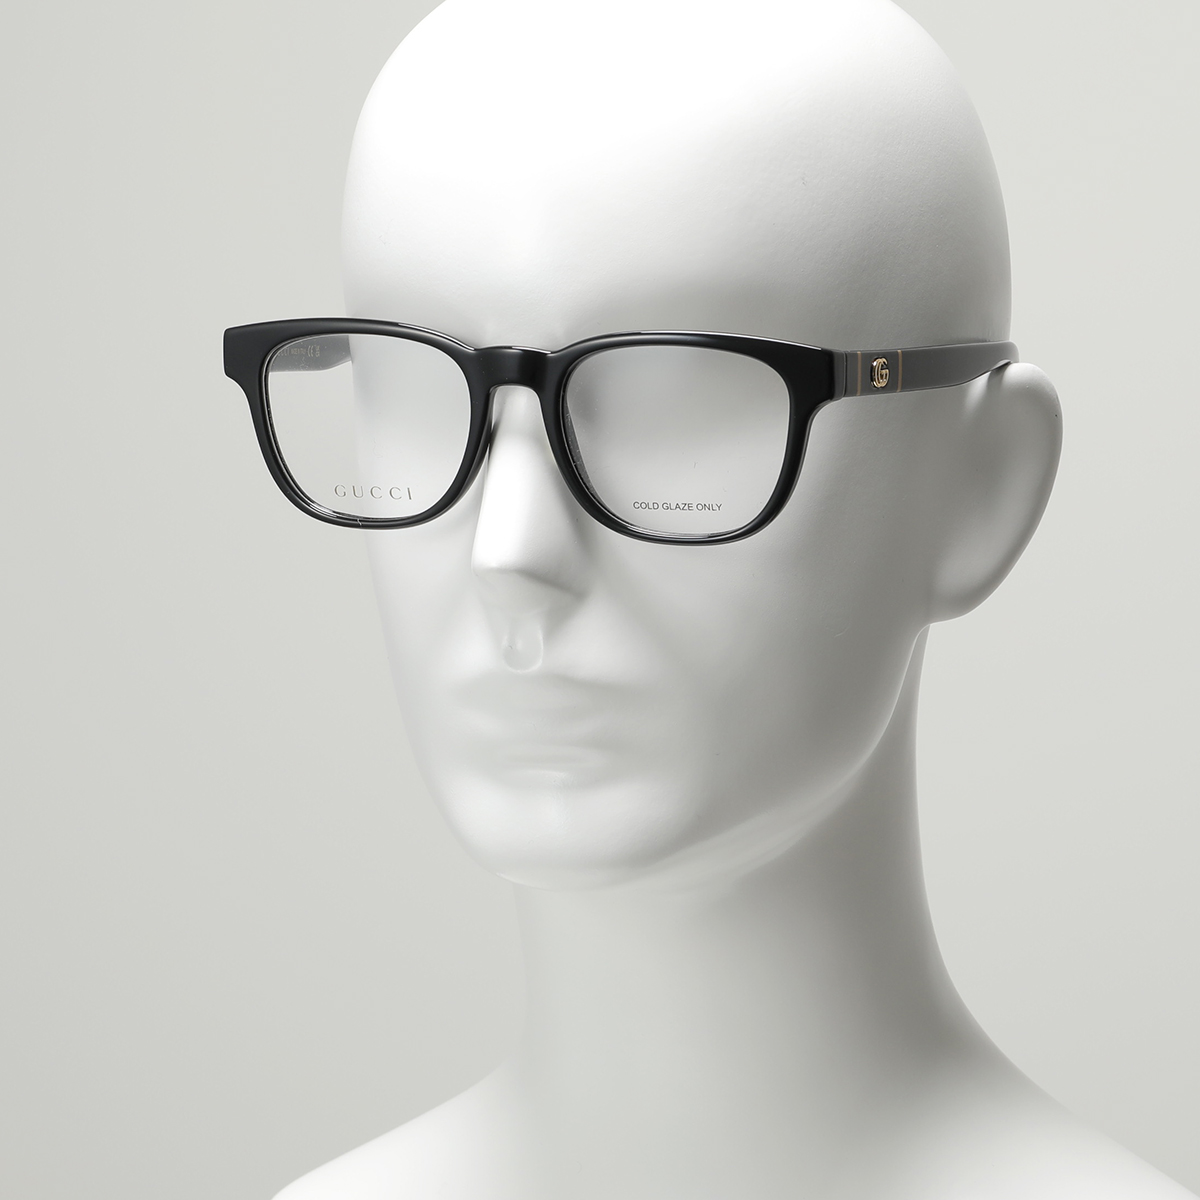 【のクオリテ】 GUCCI グッチ メガネ GG0764O メンズ 眼鏡 フレーム 伊達メガネ アイウェア めがね GGロゴ 黒縁メガネ 001/BLACK-BLACK-TRANSPARENT：インポートセレクト musee ブランドケ